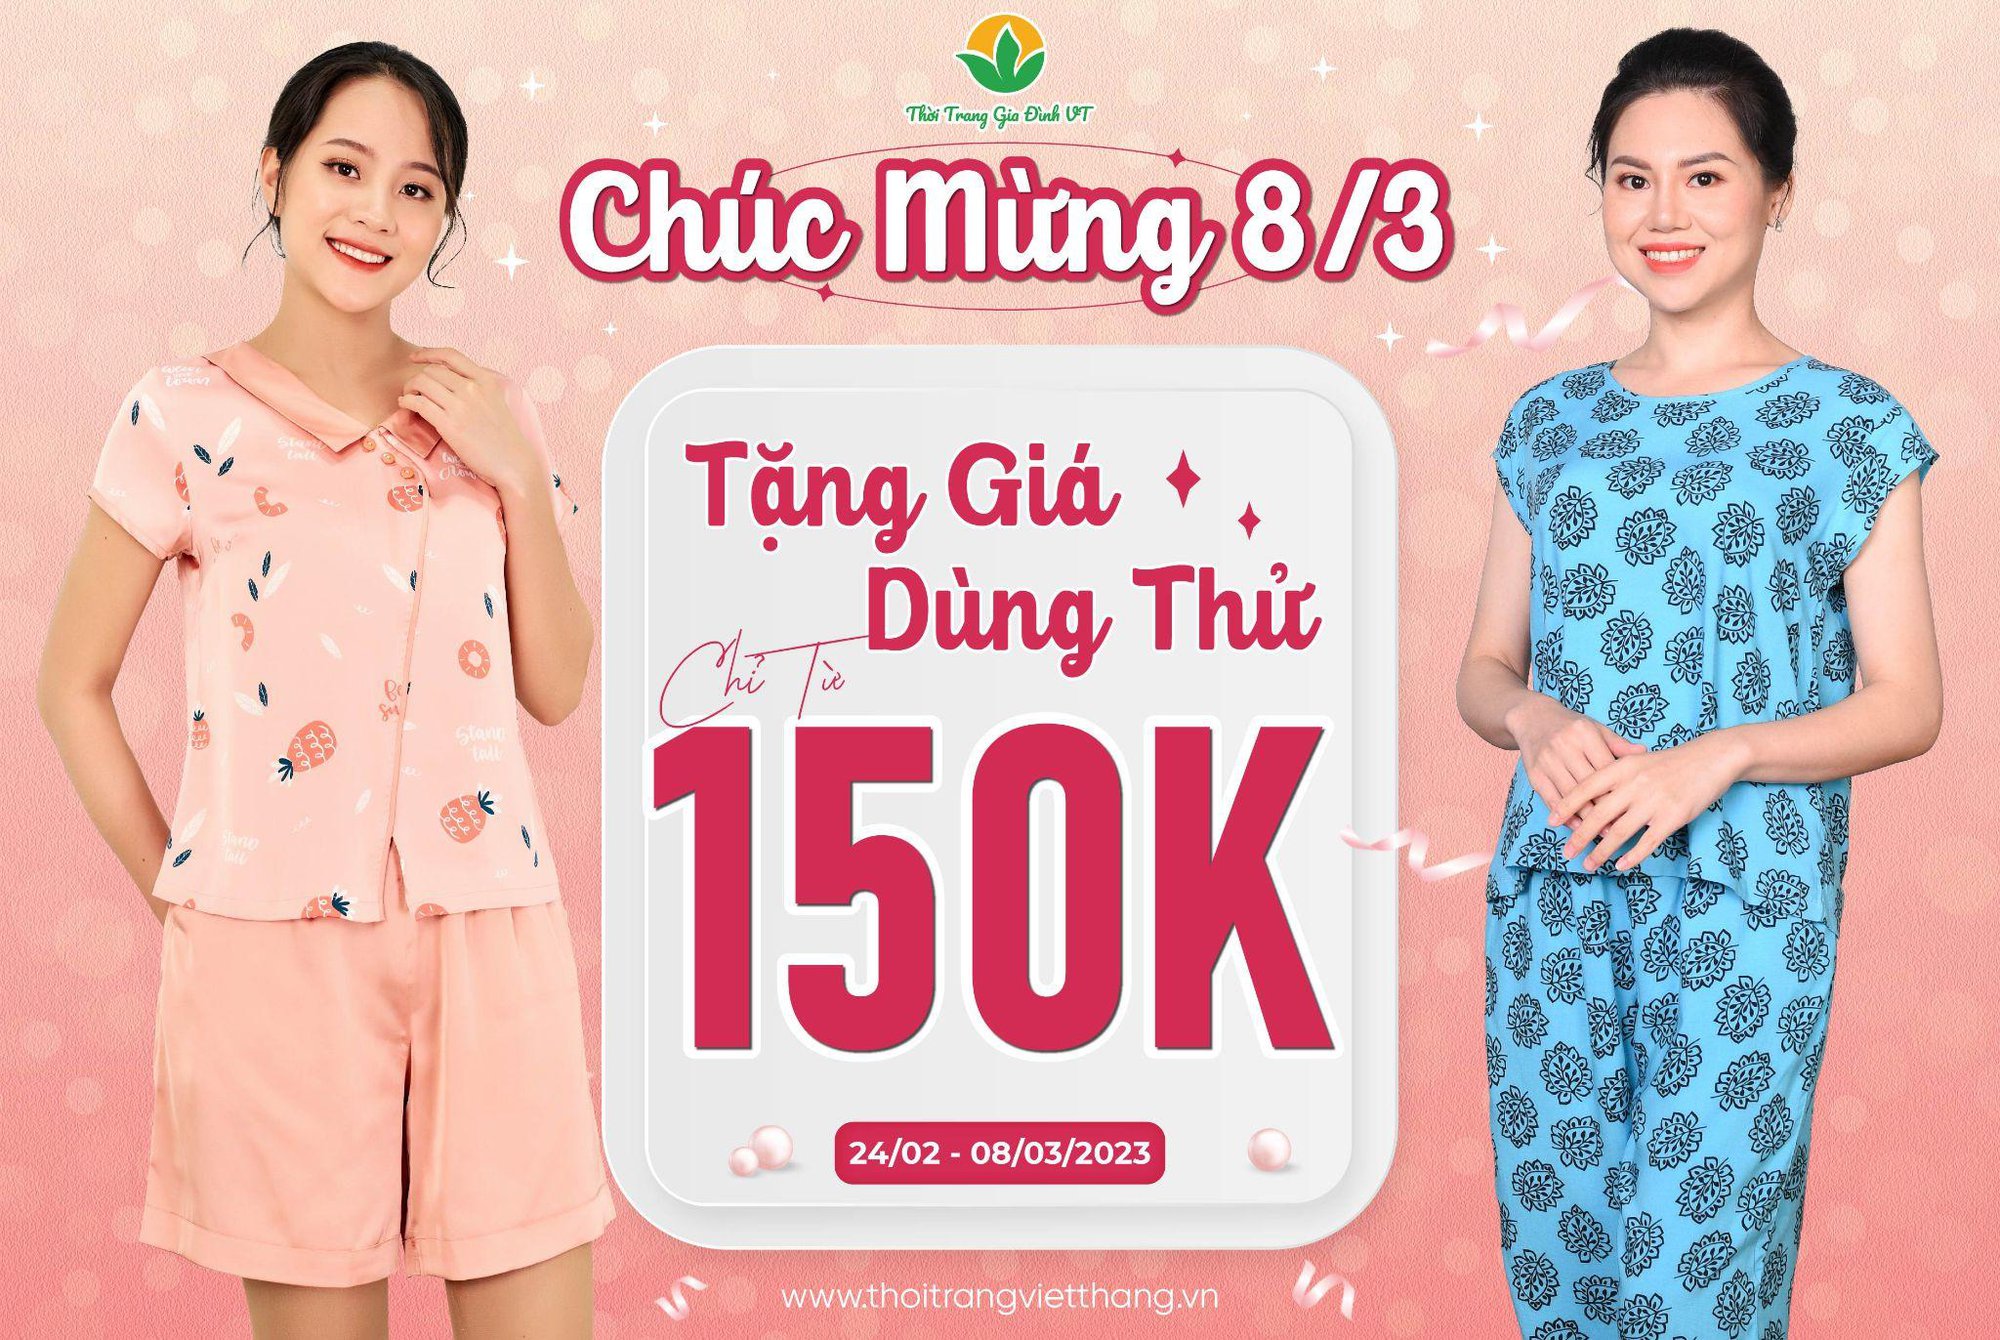 Mừng ngày 8/3 thời trang Việt Thắng tặng giá dùng thử hấp dẫn cho cả gia đình - Ảnh 2.